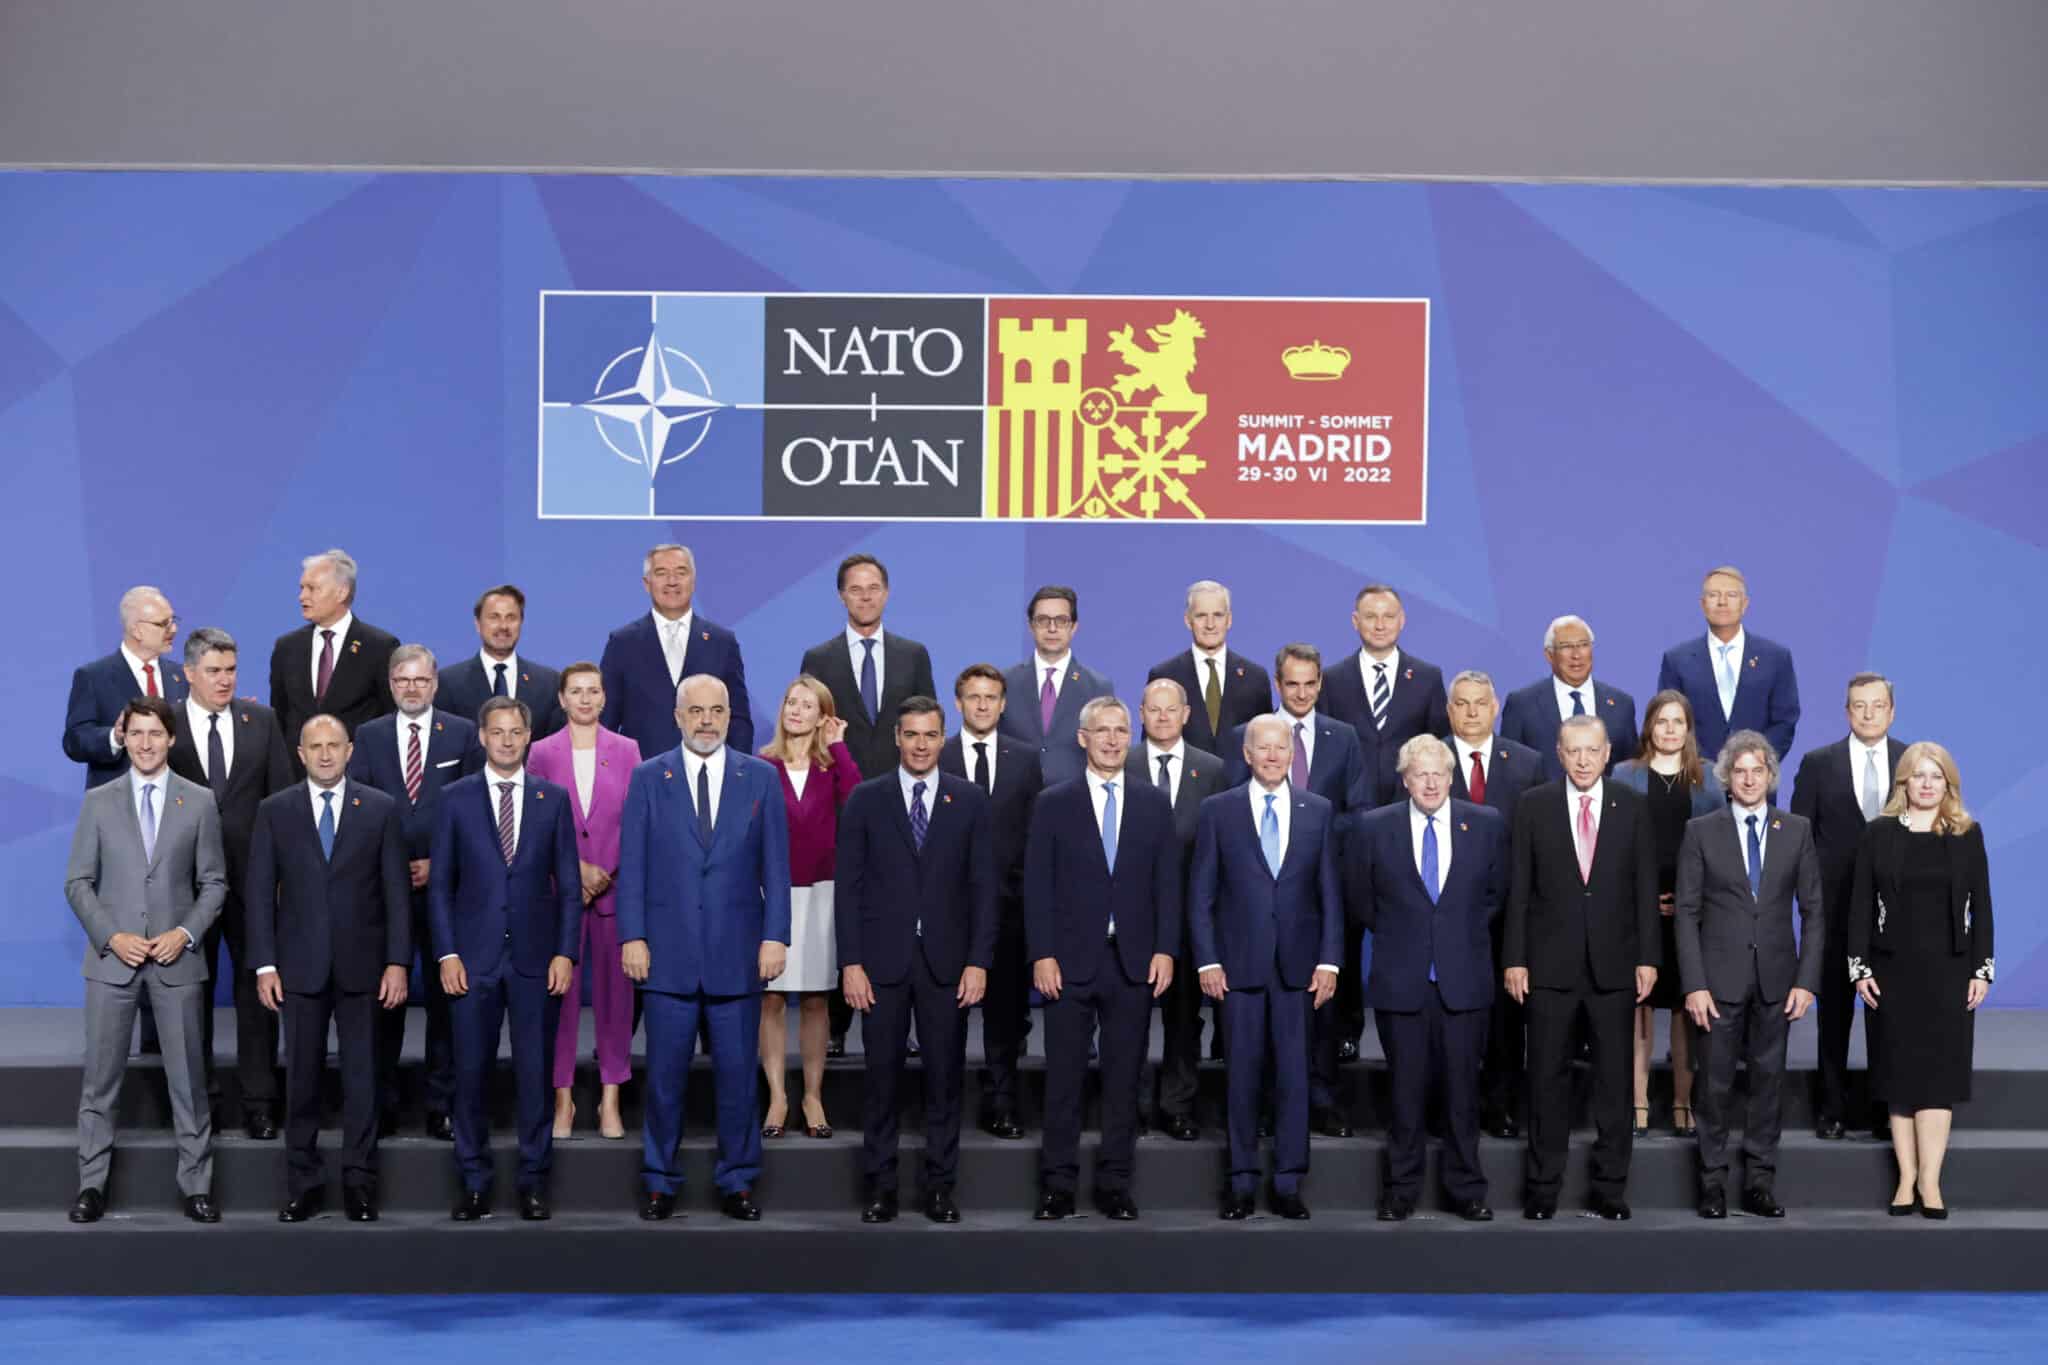 Los líderes de la OTAN posan para la foto oficial durante la primera jornada de la cumbre de la OTAN que se celebra este miércoles en el recinto de Ifema, en Madrid.